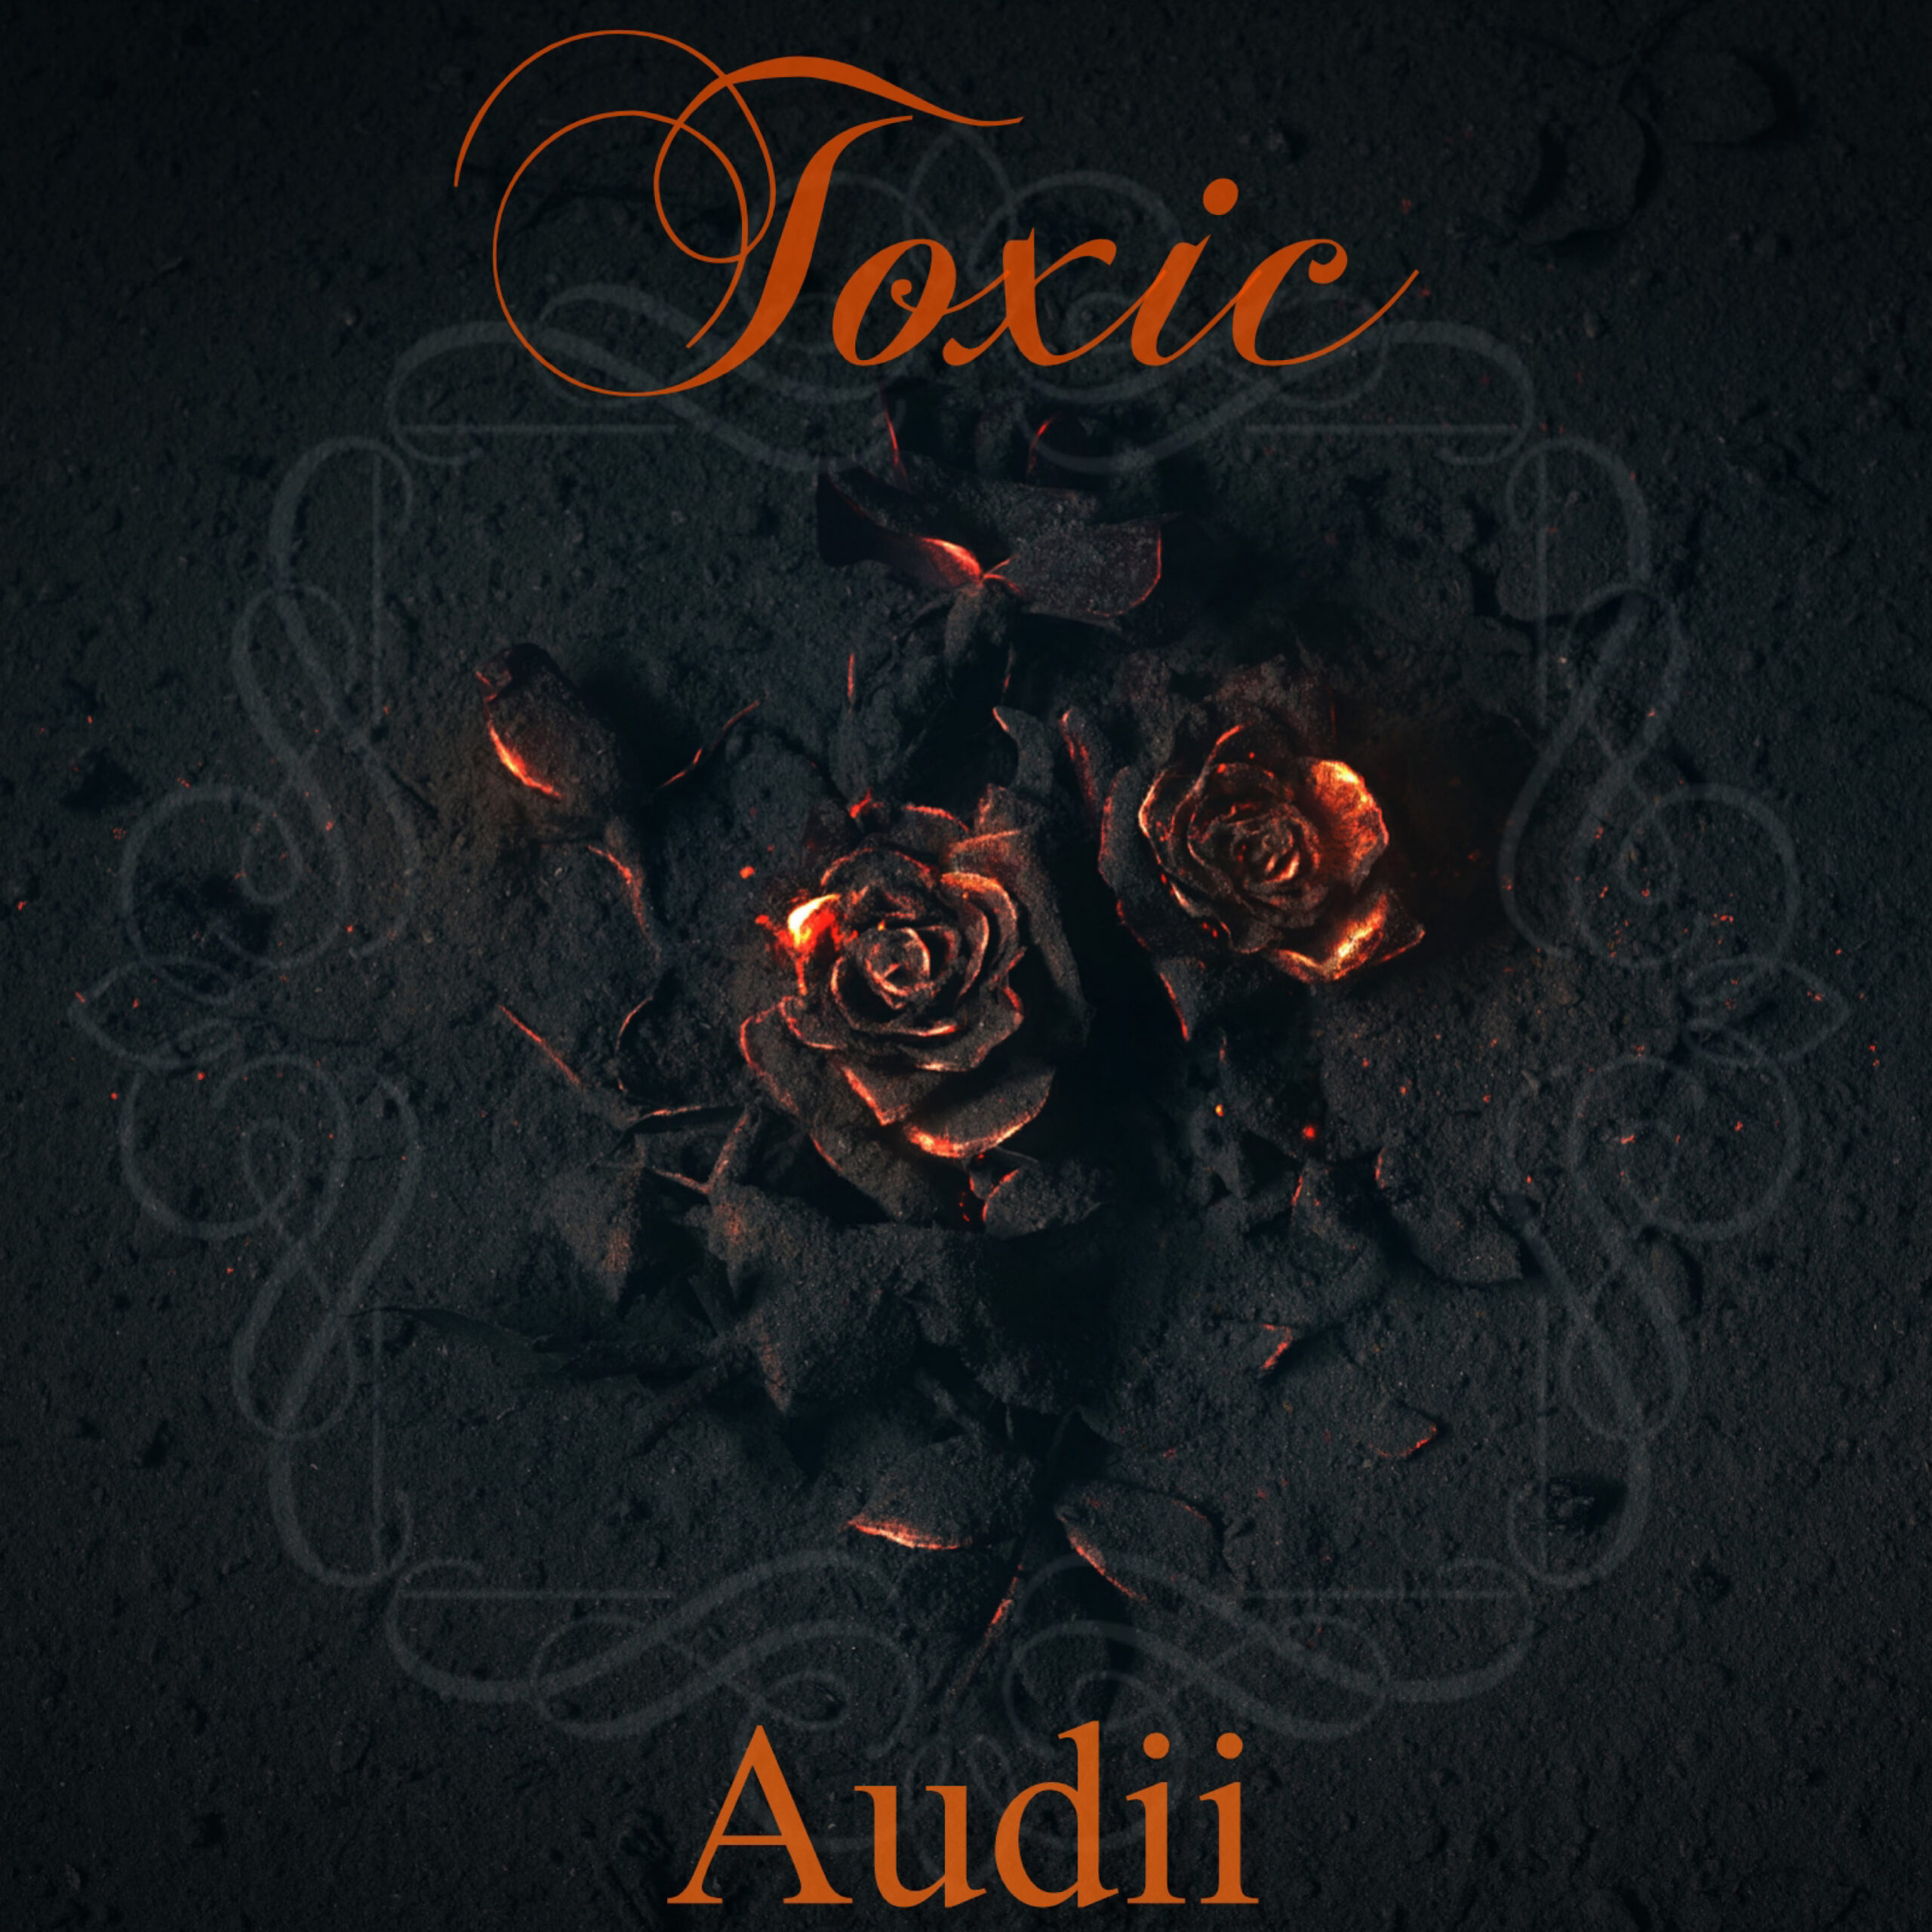 Audii Speaks Volumes On New Hit Track “Toxic”